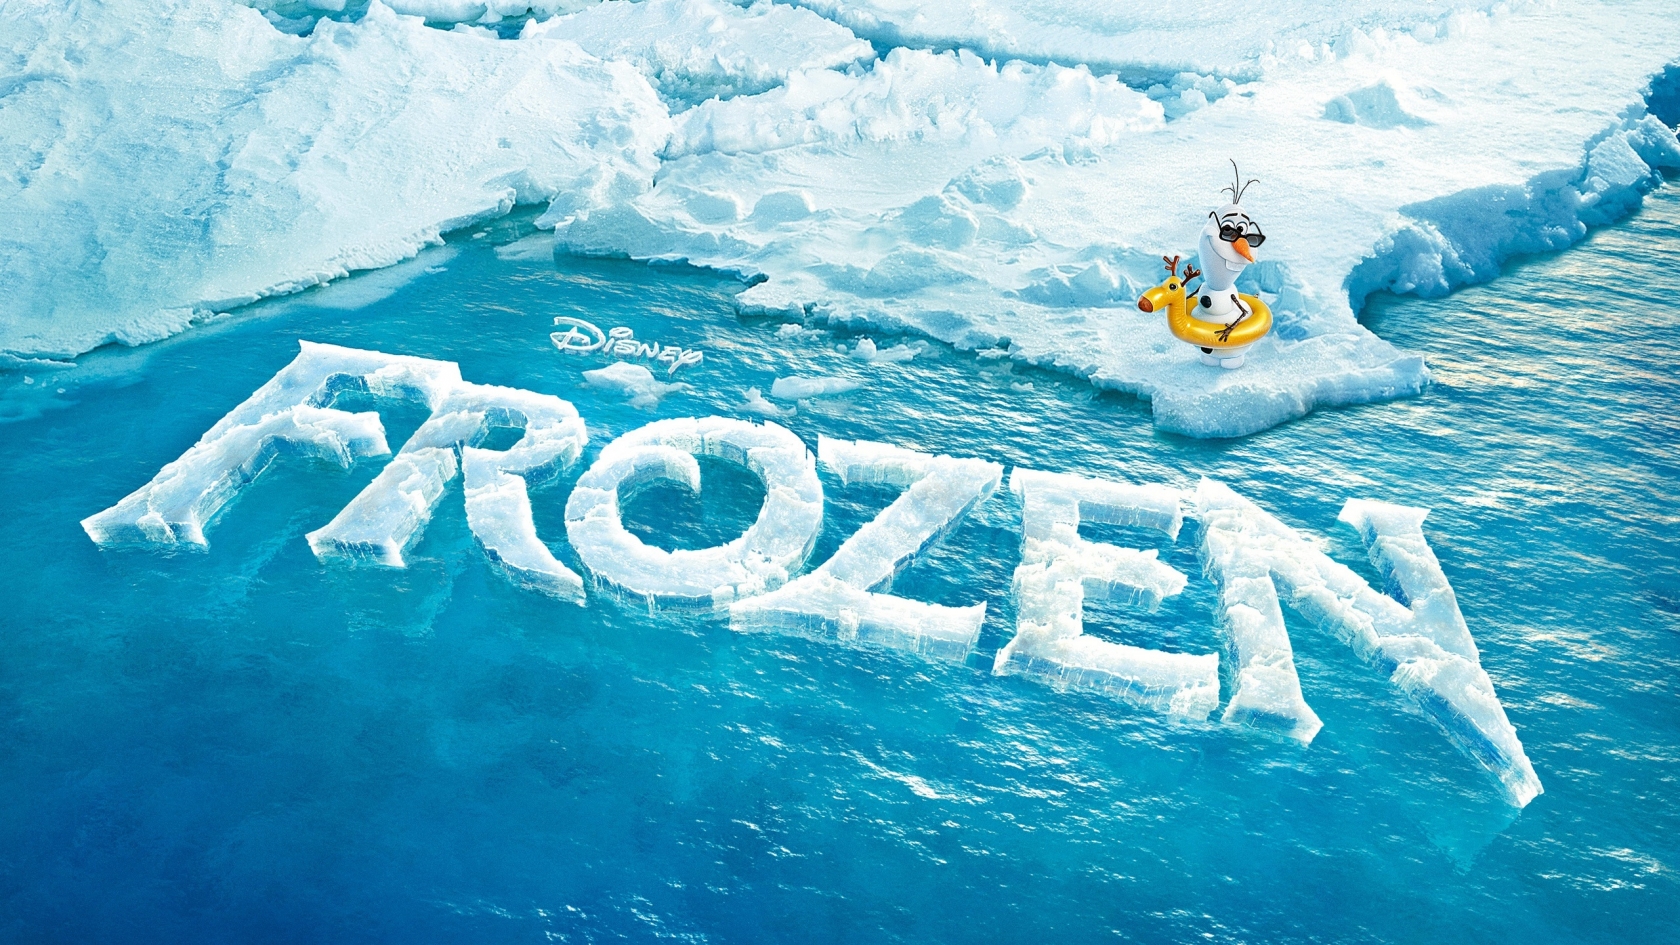 Frozen Movie for 1680 x 945 HDTV resolution